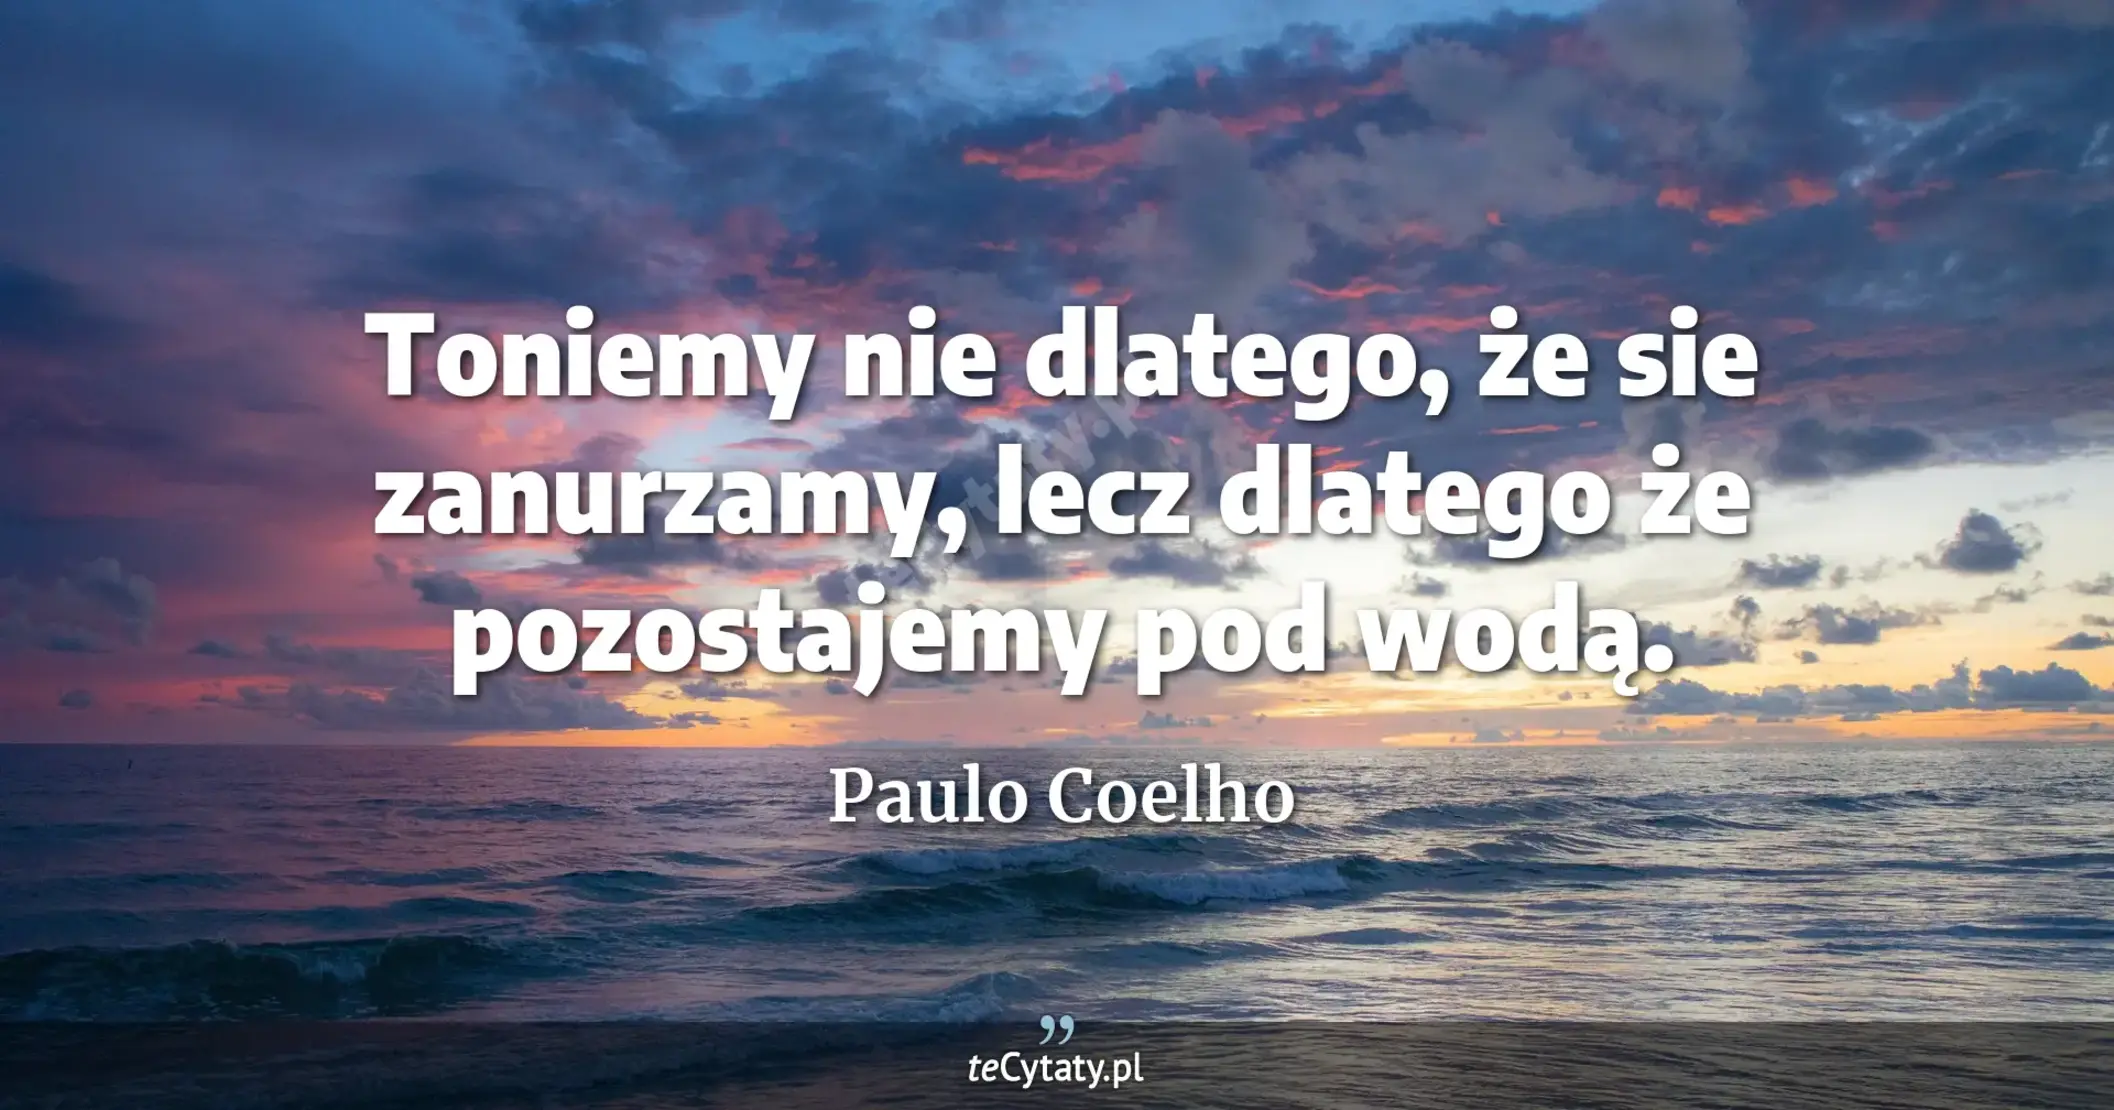 Toniemy nie dlatego, że sie zanurzamy, lecz dlatego że pozostajemy pod wodą. - Paulo Coelho